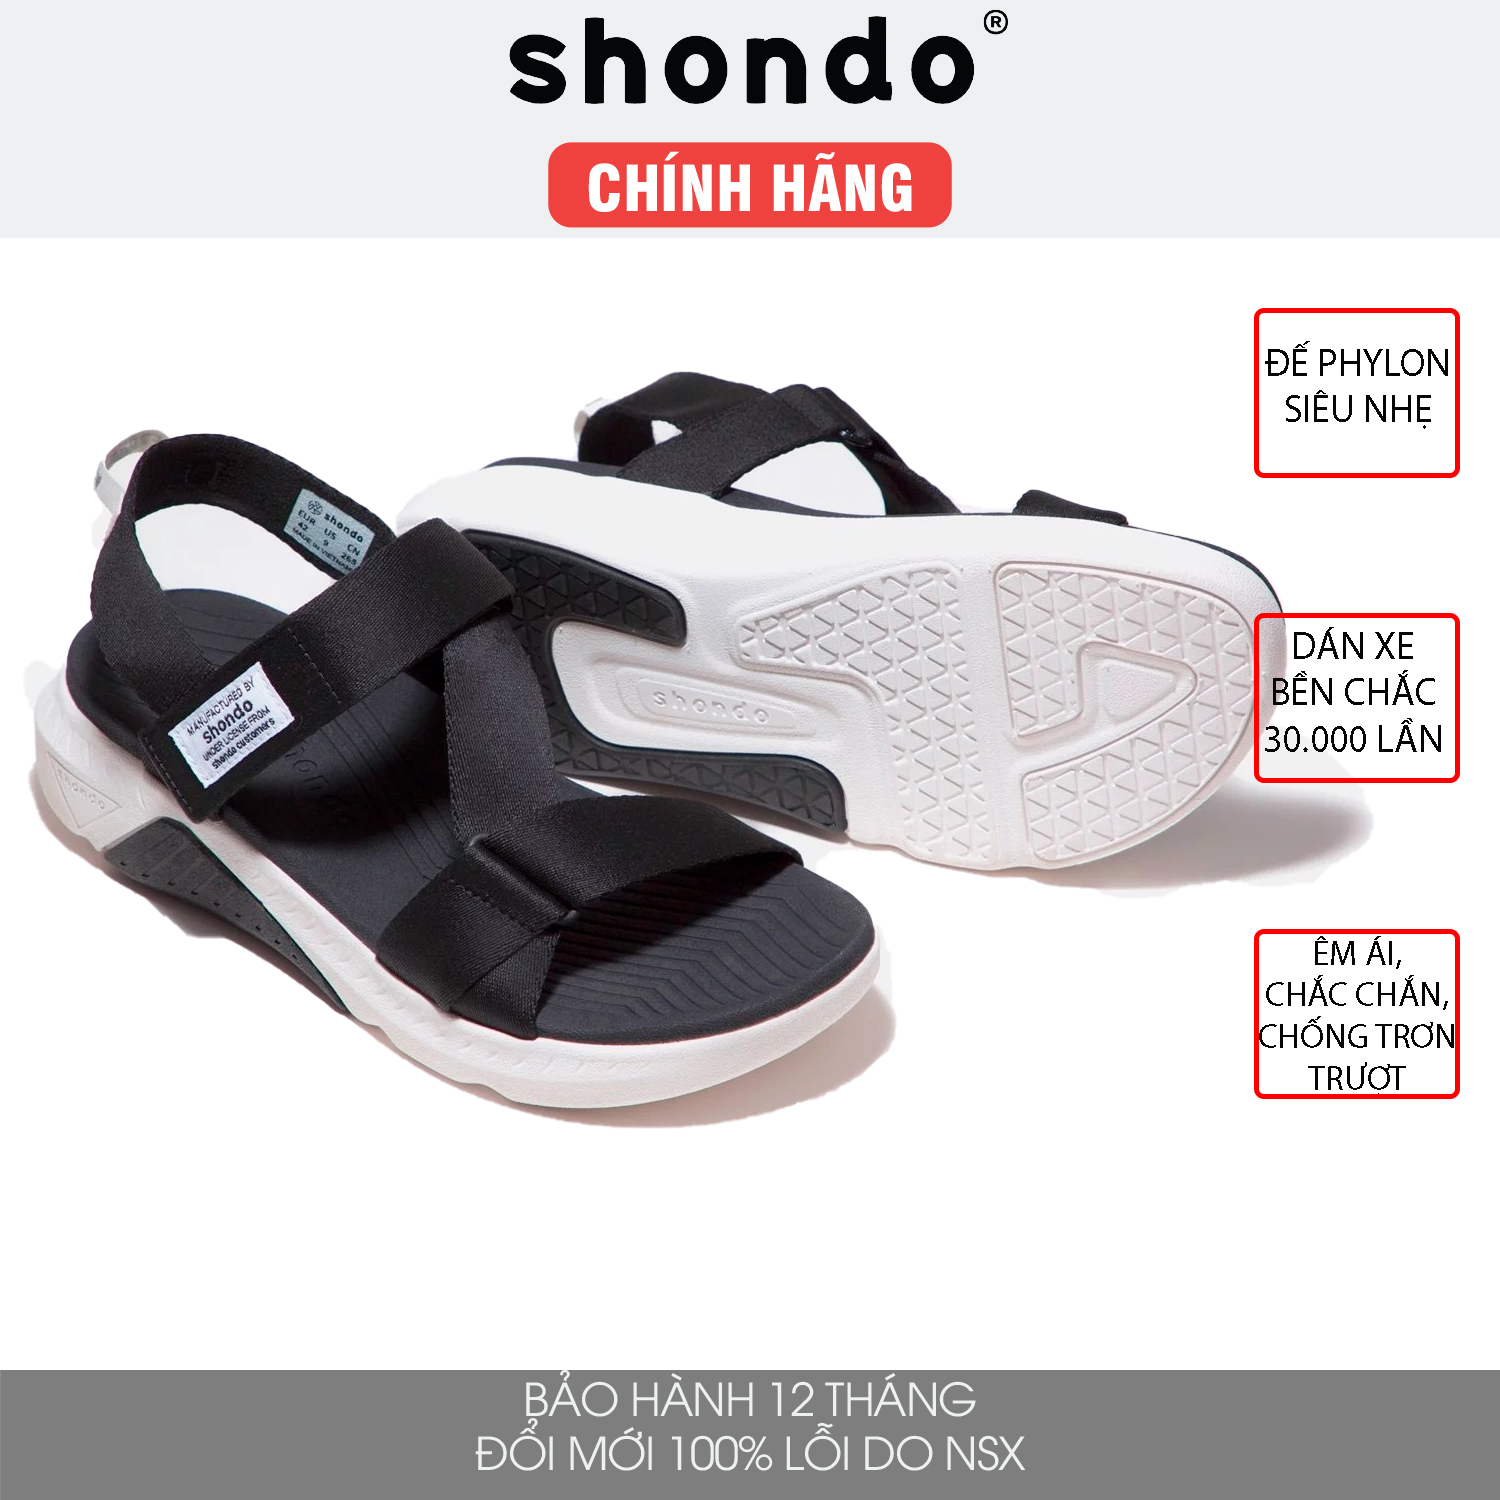 Giày sandal Shondo F7 nam nữ đi học đế cao đen trắng F7R0010